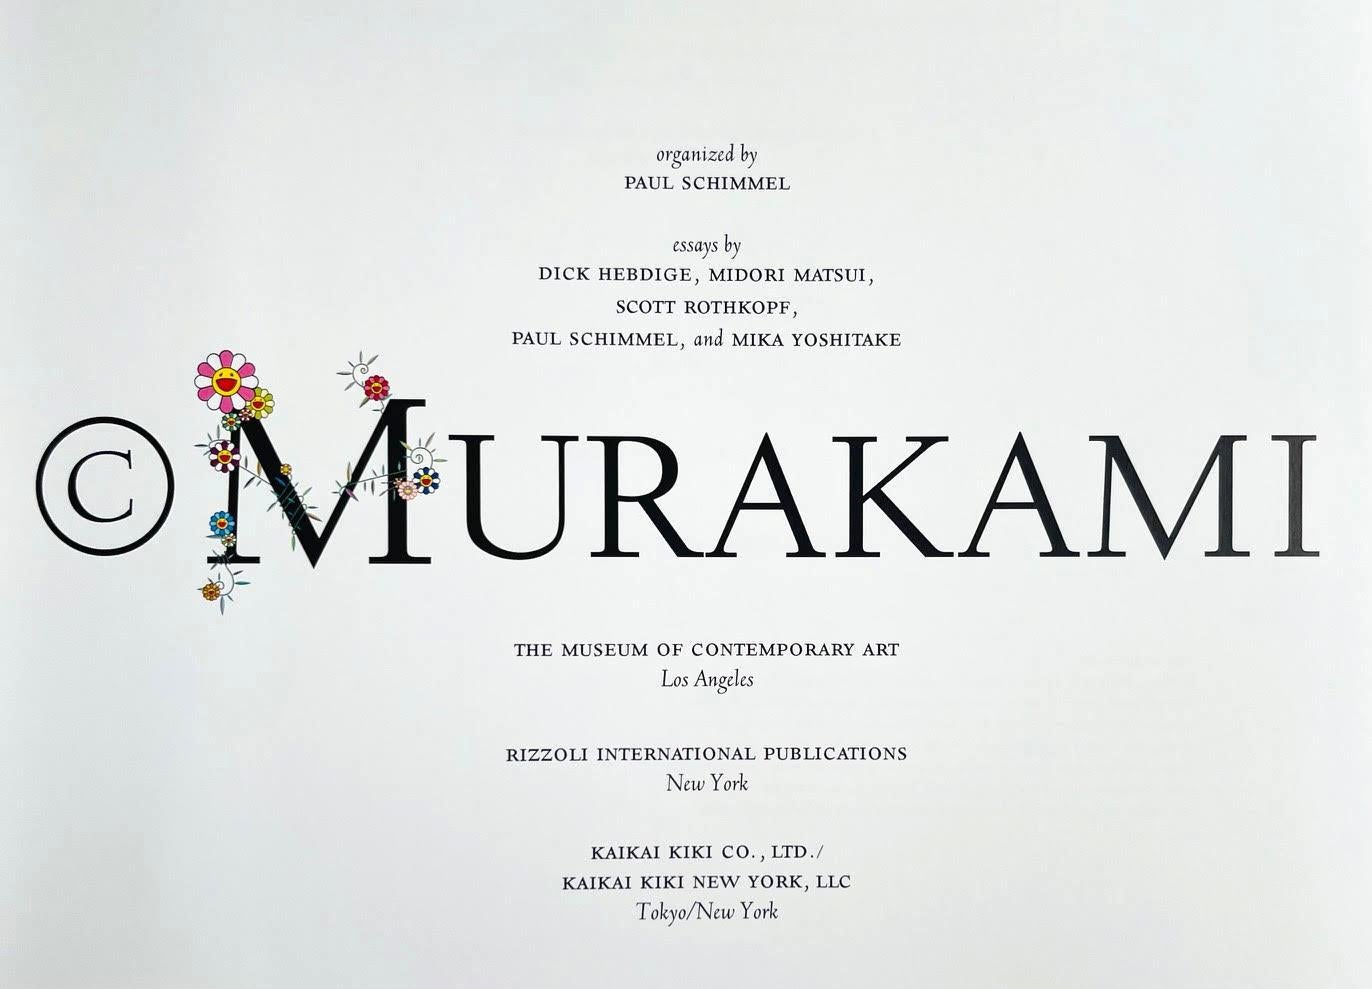 Takashi Murakami
Ohne Titel signierte Originalzeichnung von zwei Blumen mit Herzkritzelei, 2021
Original Marker-Zeichnung auf der Titelseite, gebunden in einer gebundenen Monographie mit violettem Karton und Schutzumschlag (handsigniert und auf